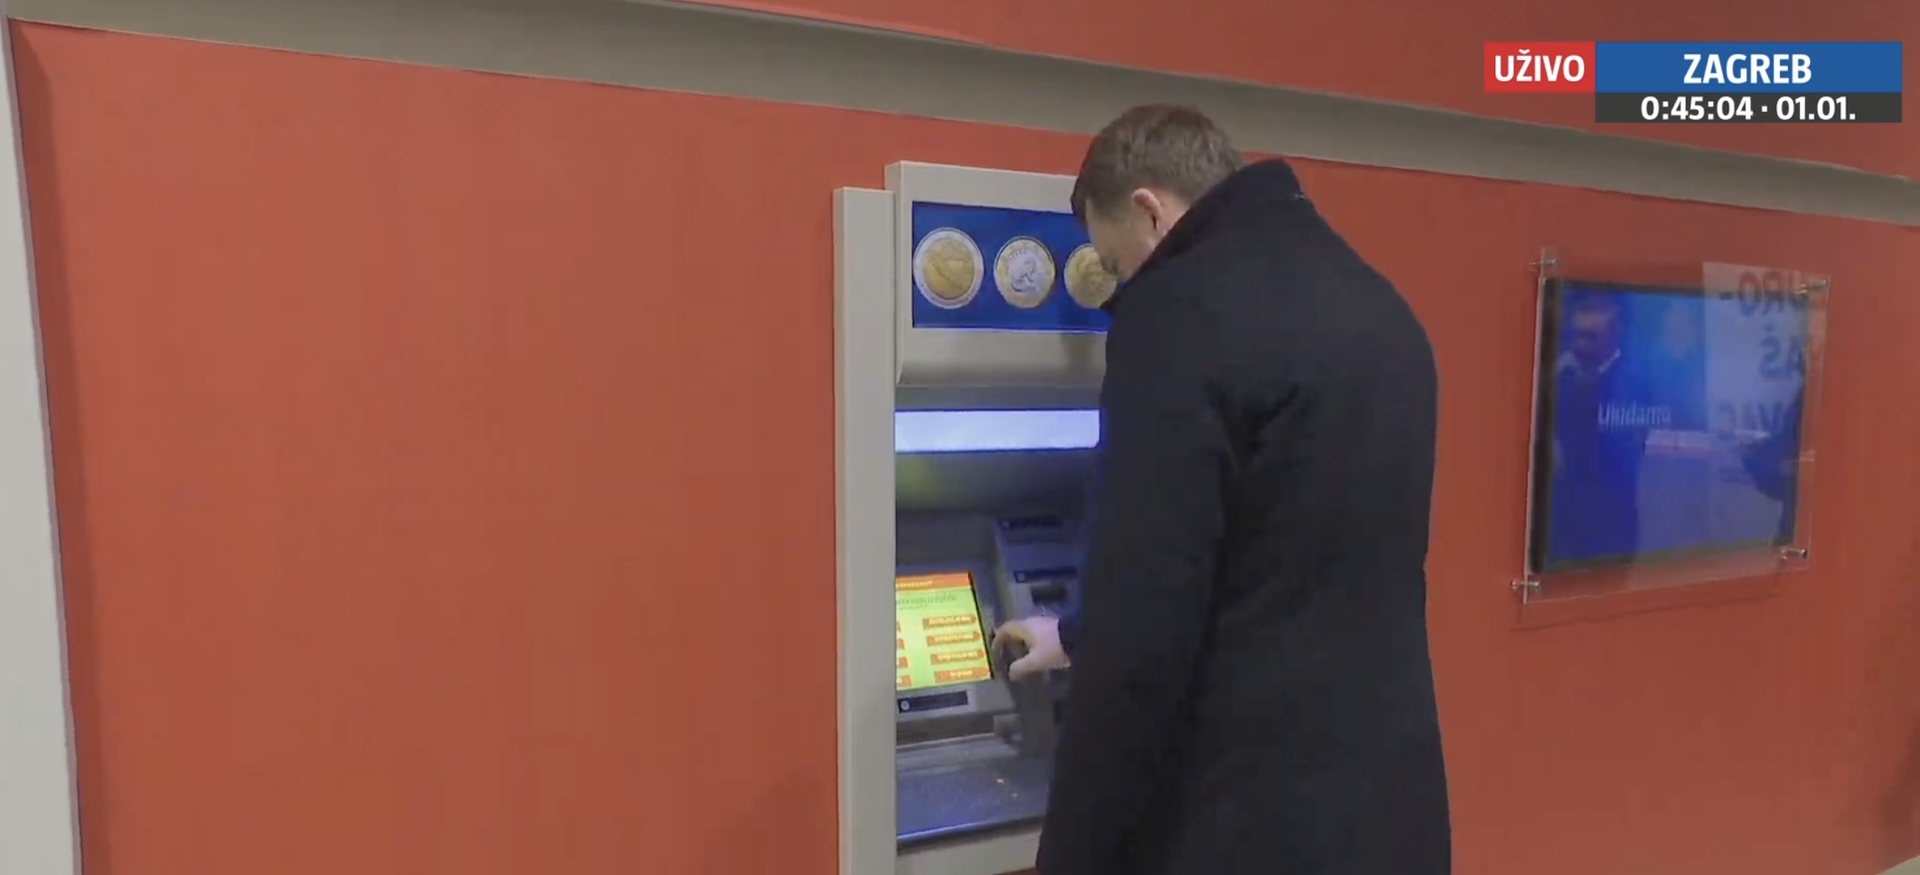 Podizanje eura na bankomatu